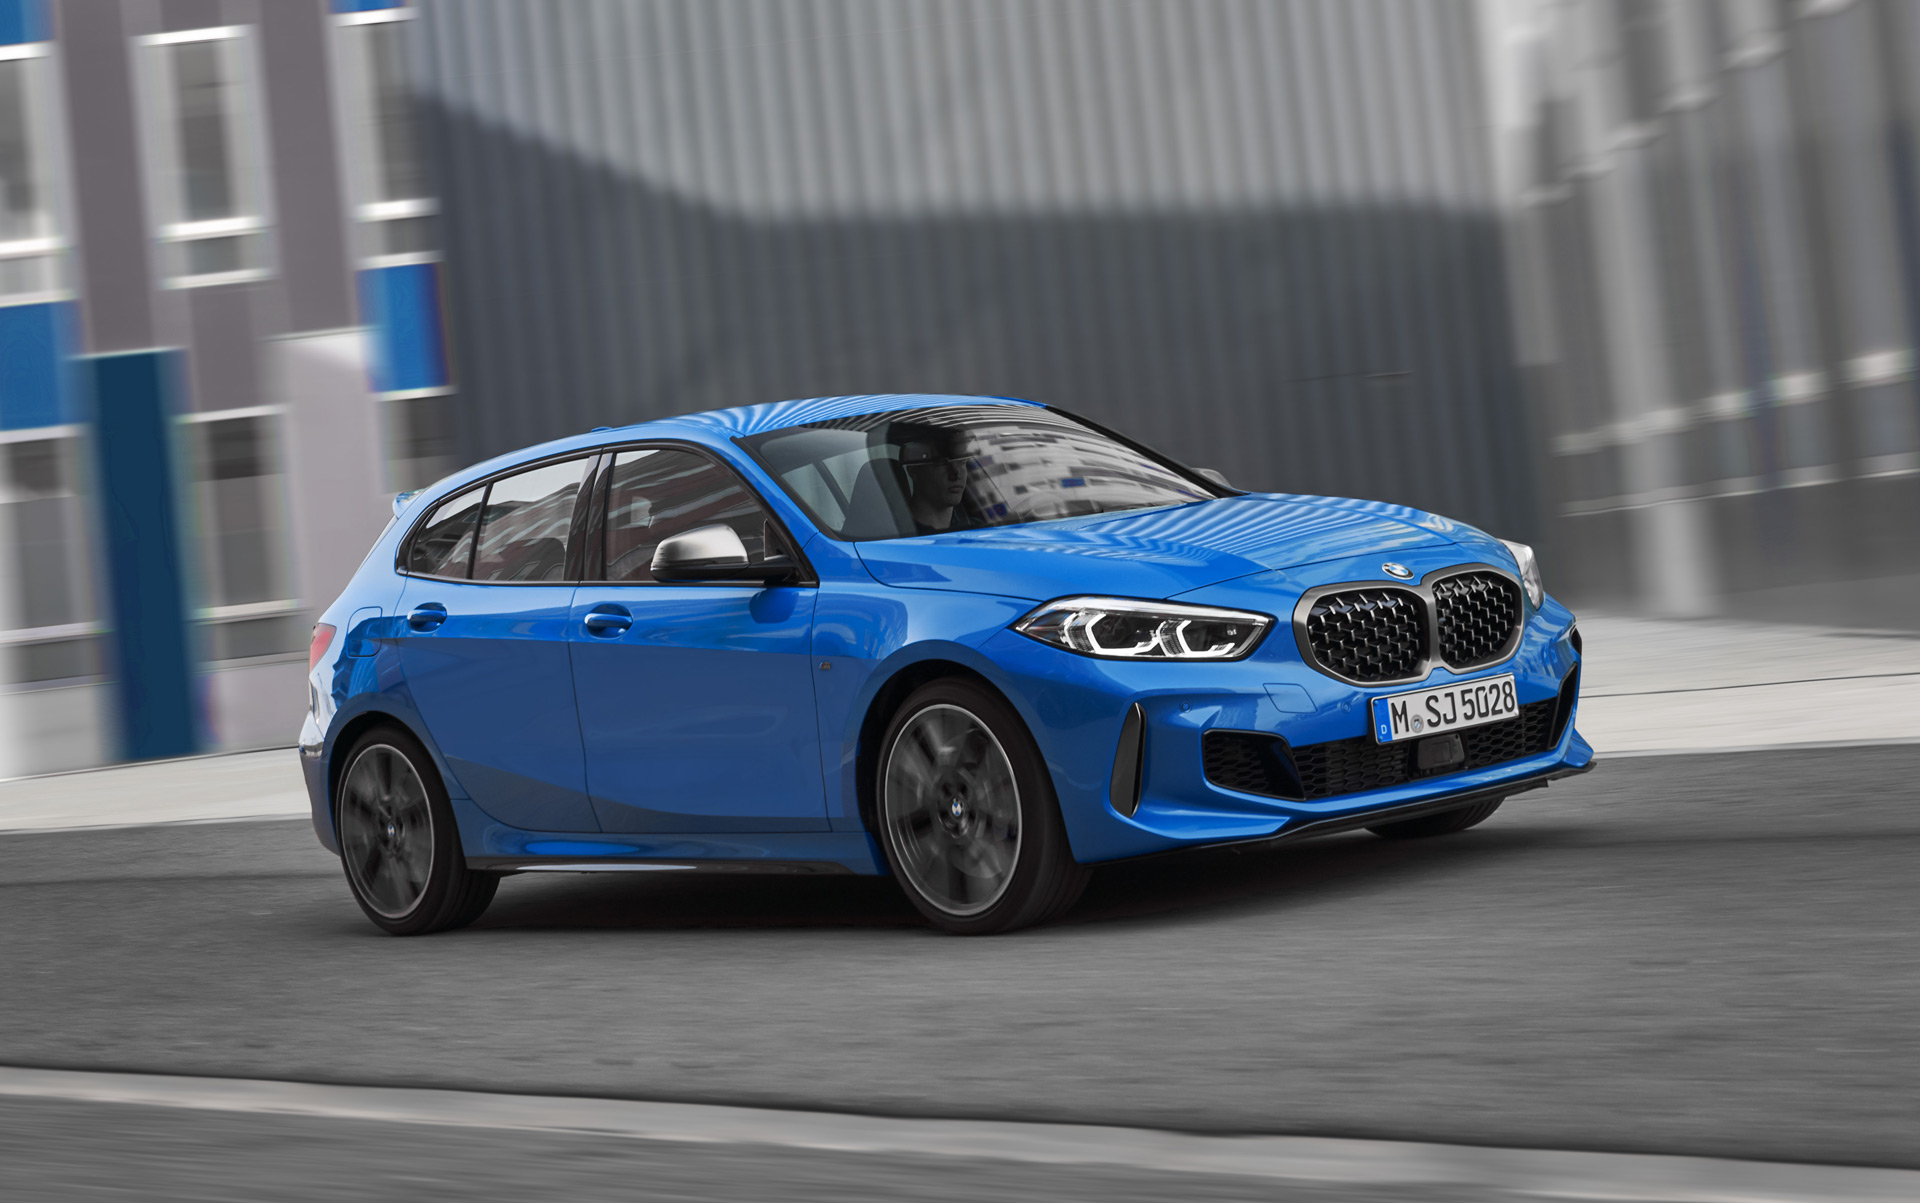 Γιατί η BMW έκανε τη νέα Σειρά 1 προσθιοκίνητη;